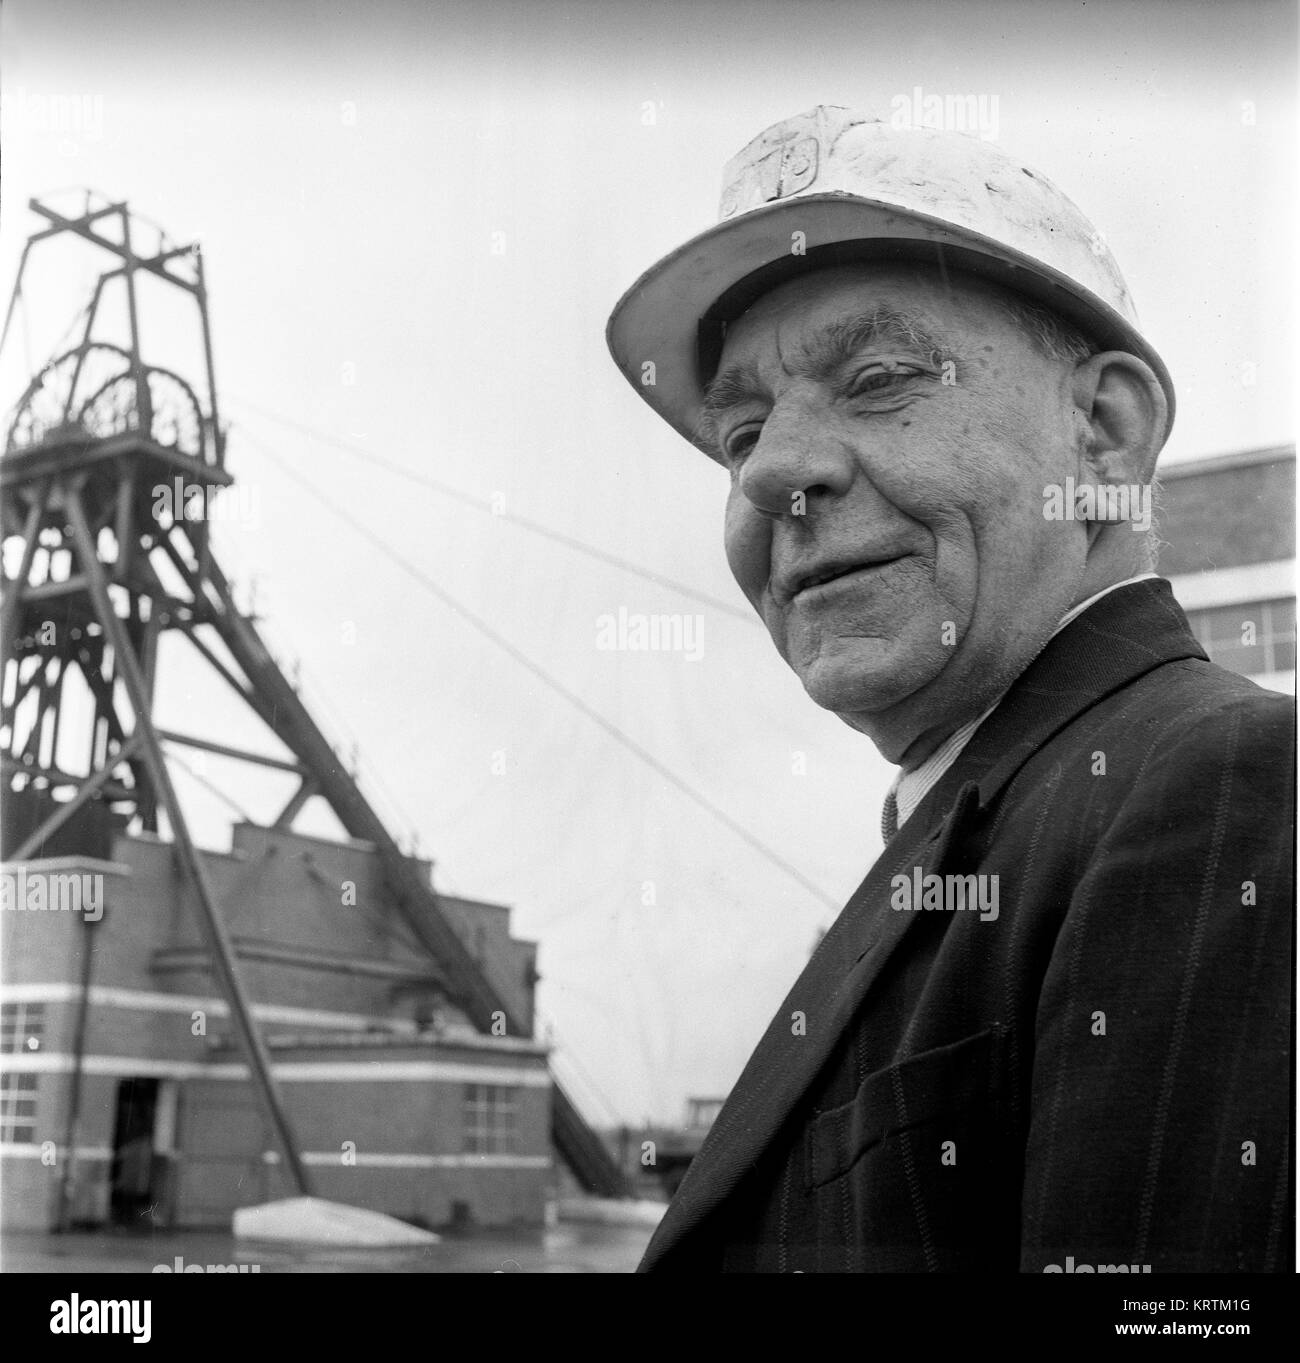 Letzter Arbeitstag für den pensionierten Kohlebergmann, der 1967 die Colliery verließ, Großbritannien, BILD VON DAVID BAGNALL Stockfoto